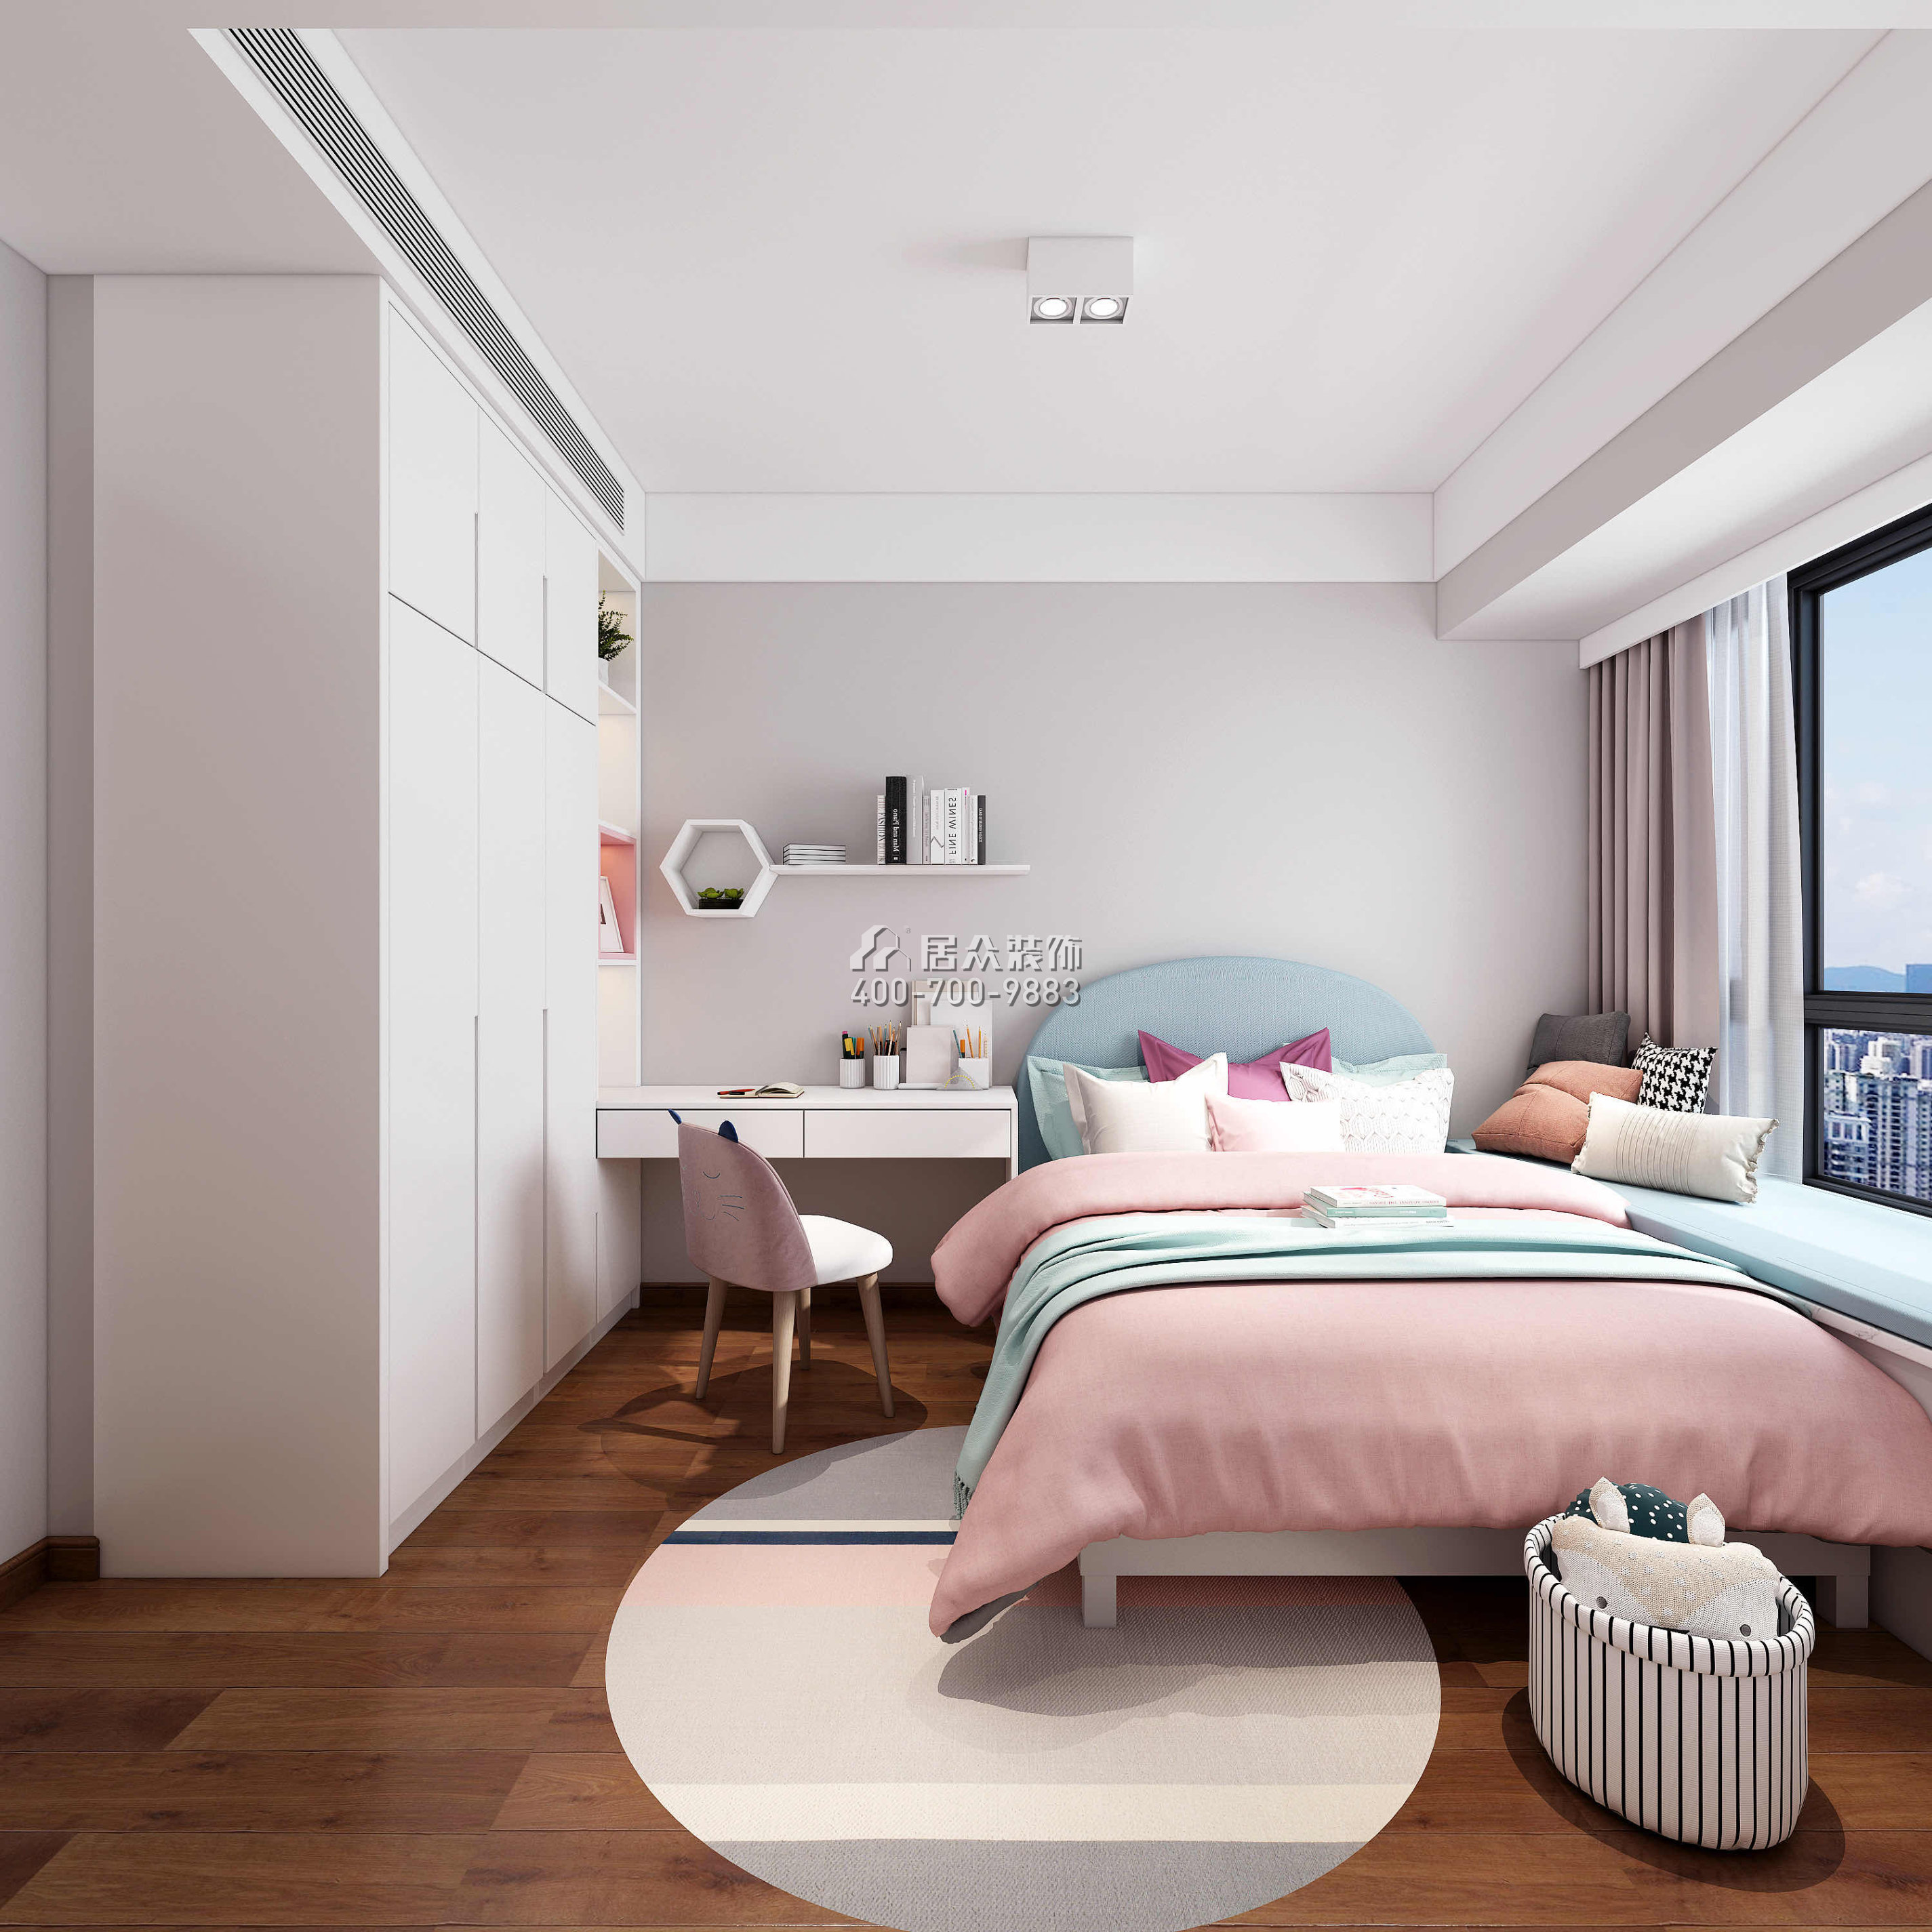 中森公园华府124平方米现代简约风格平层户型卧室装修效果图